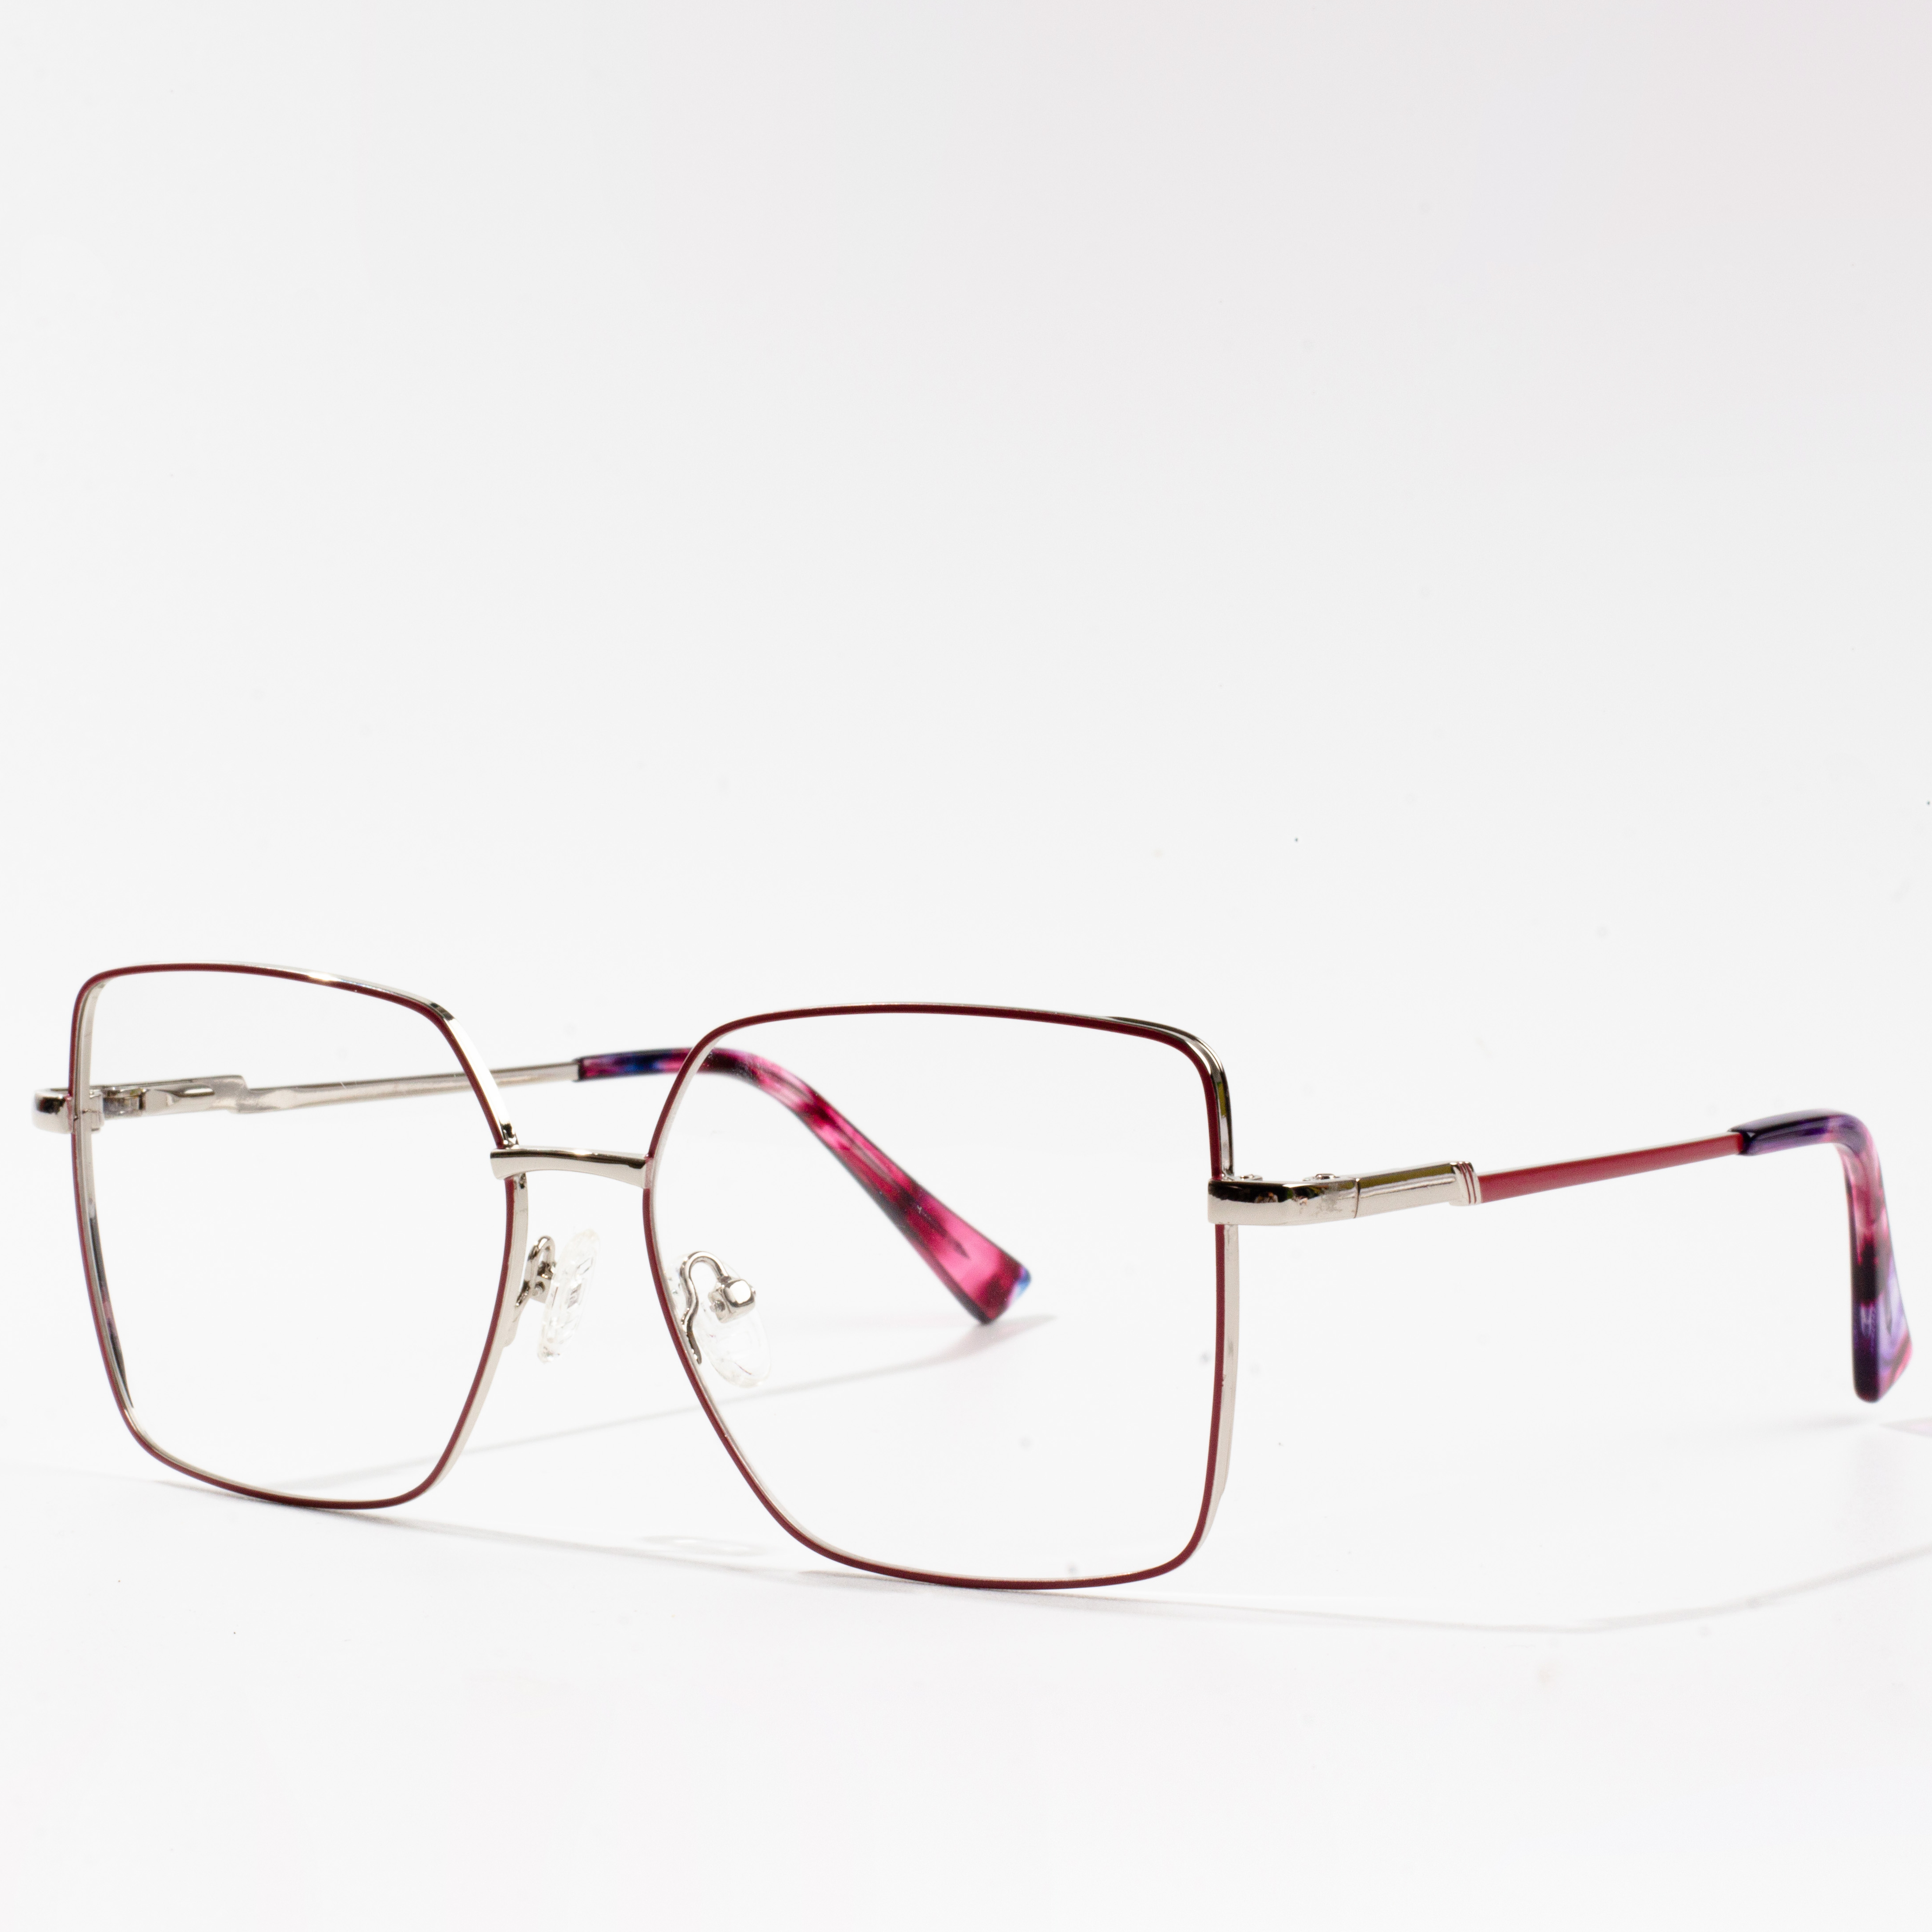 fframiau eyeglass modern